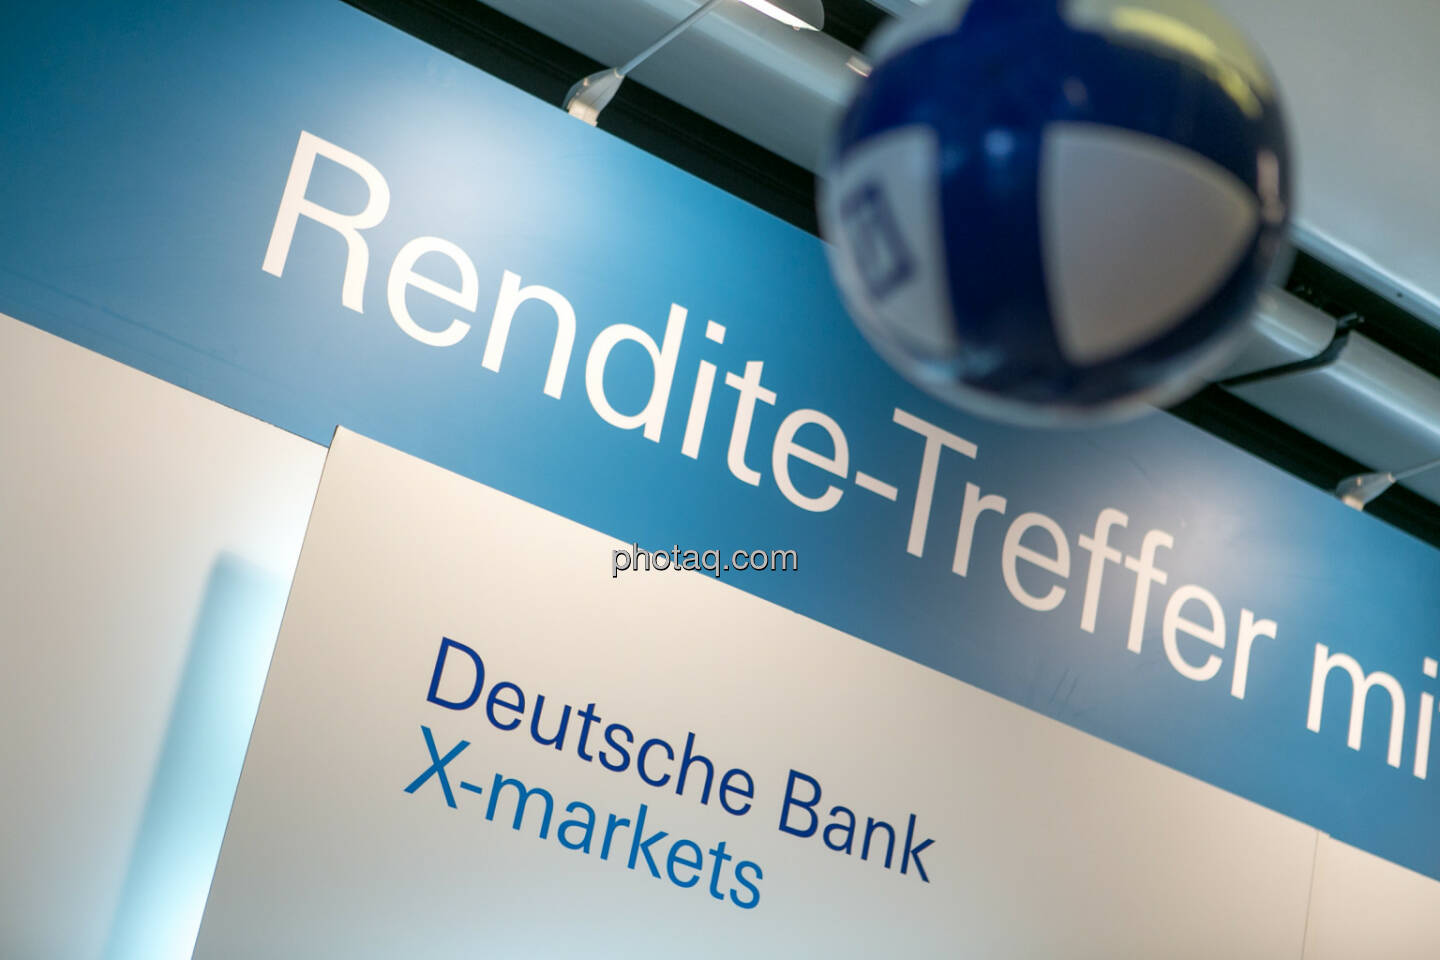 Deutsche Bank, X-markets